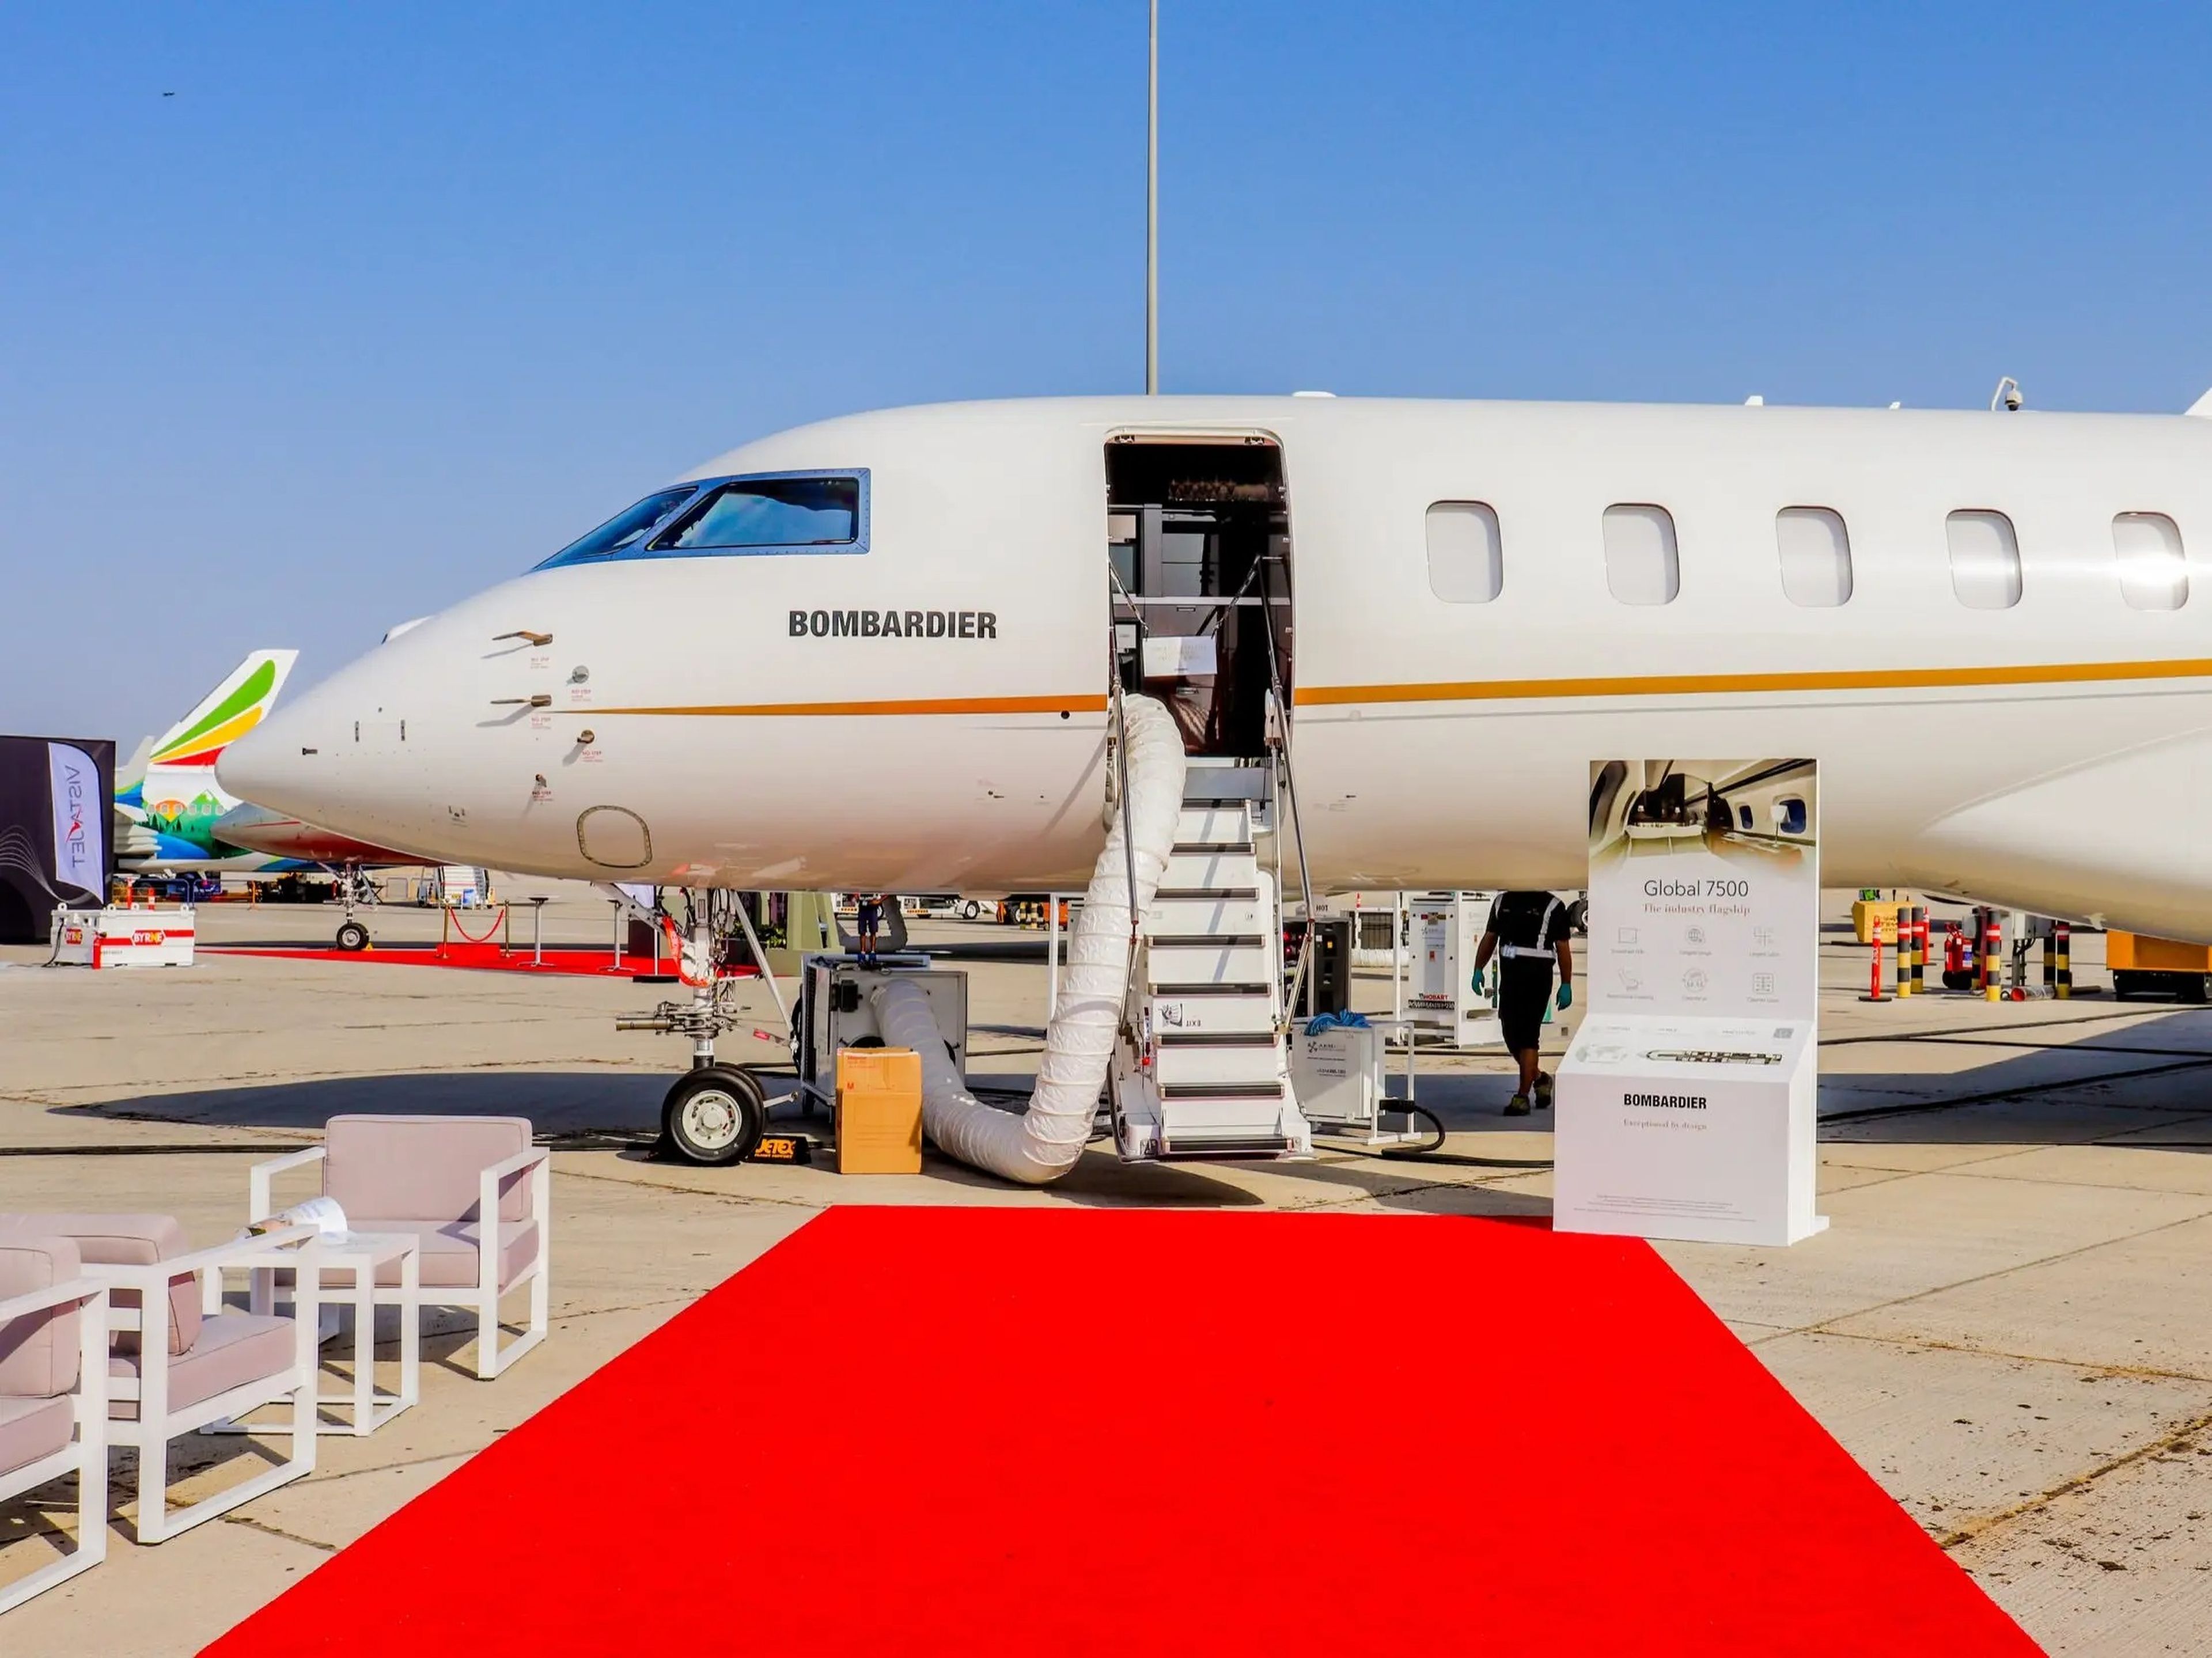 El Bombardier Global 7500 es el avión privado más grande del mundo.